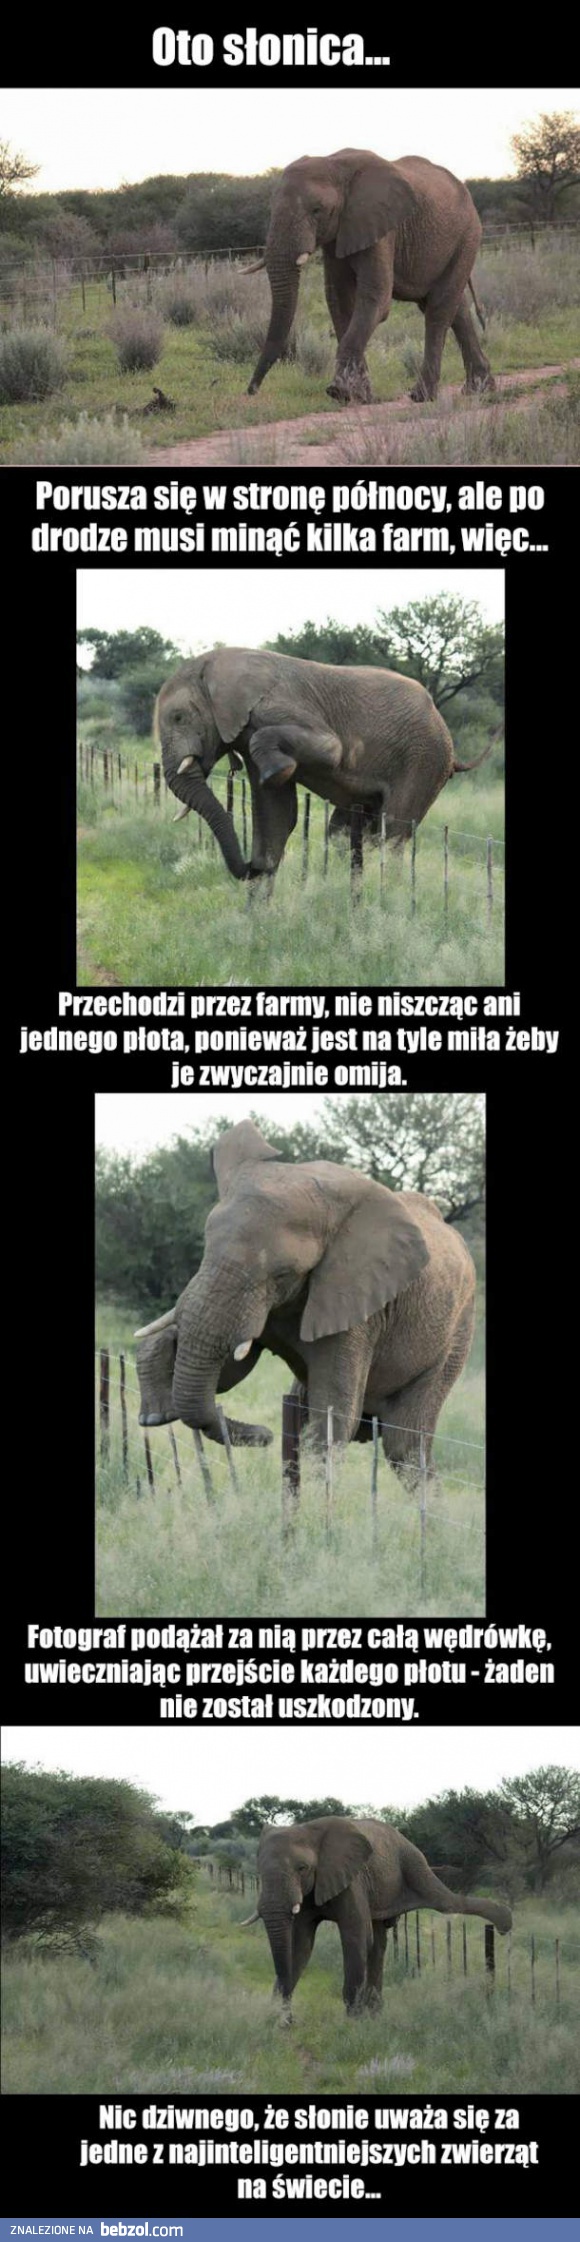 Słonie są inteligentne